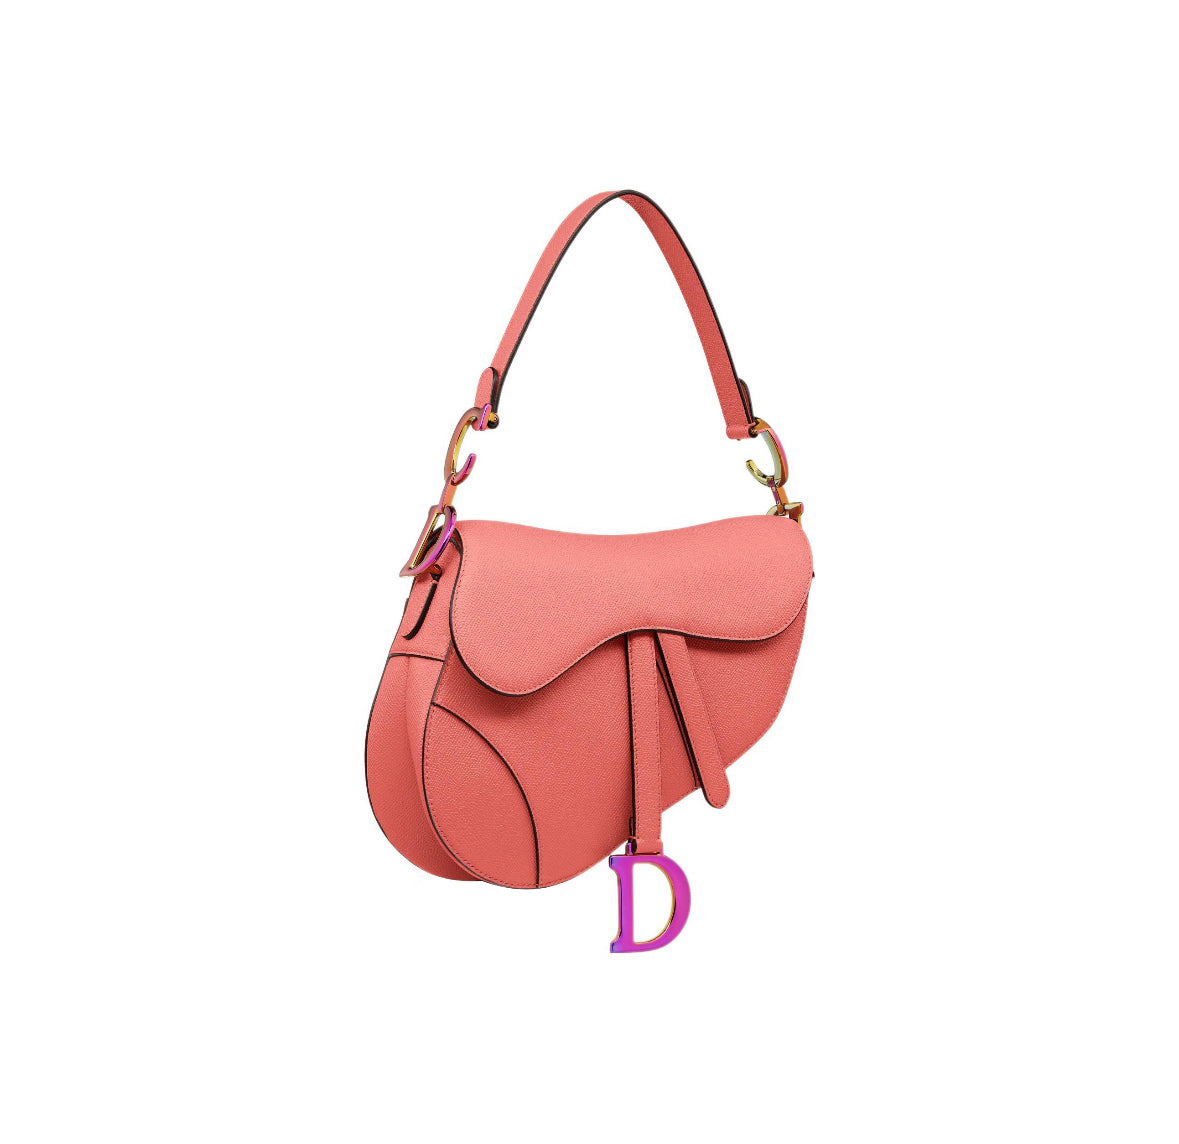 Dior Saddle Bag “Salmon / Pink”